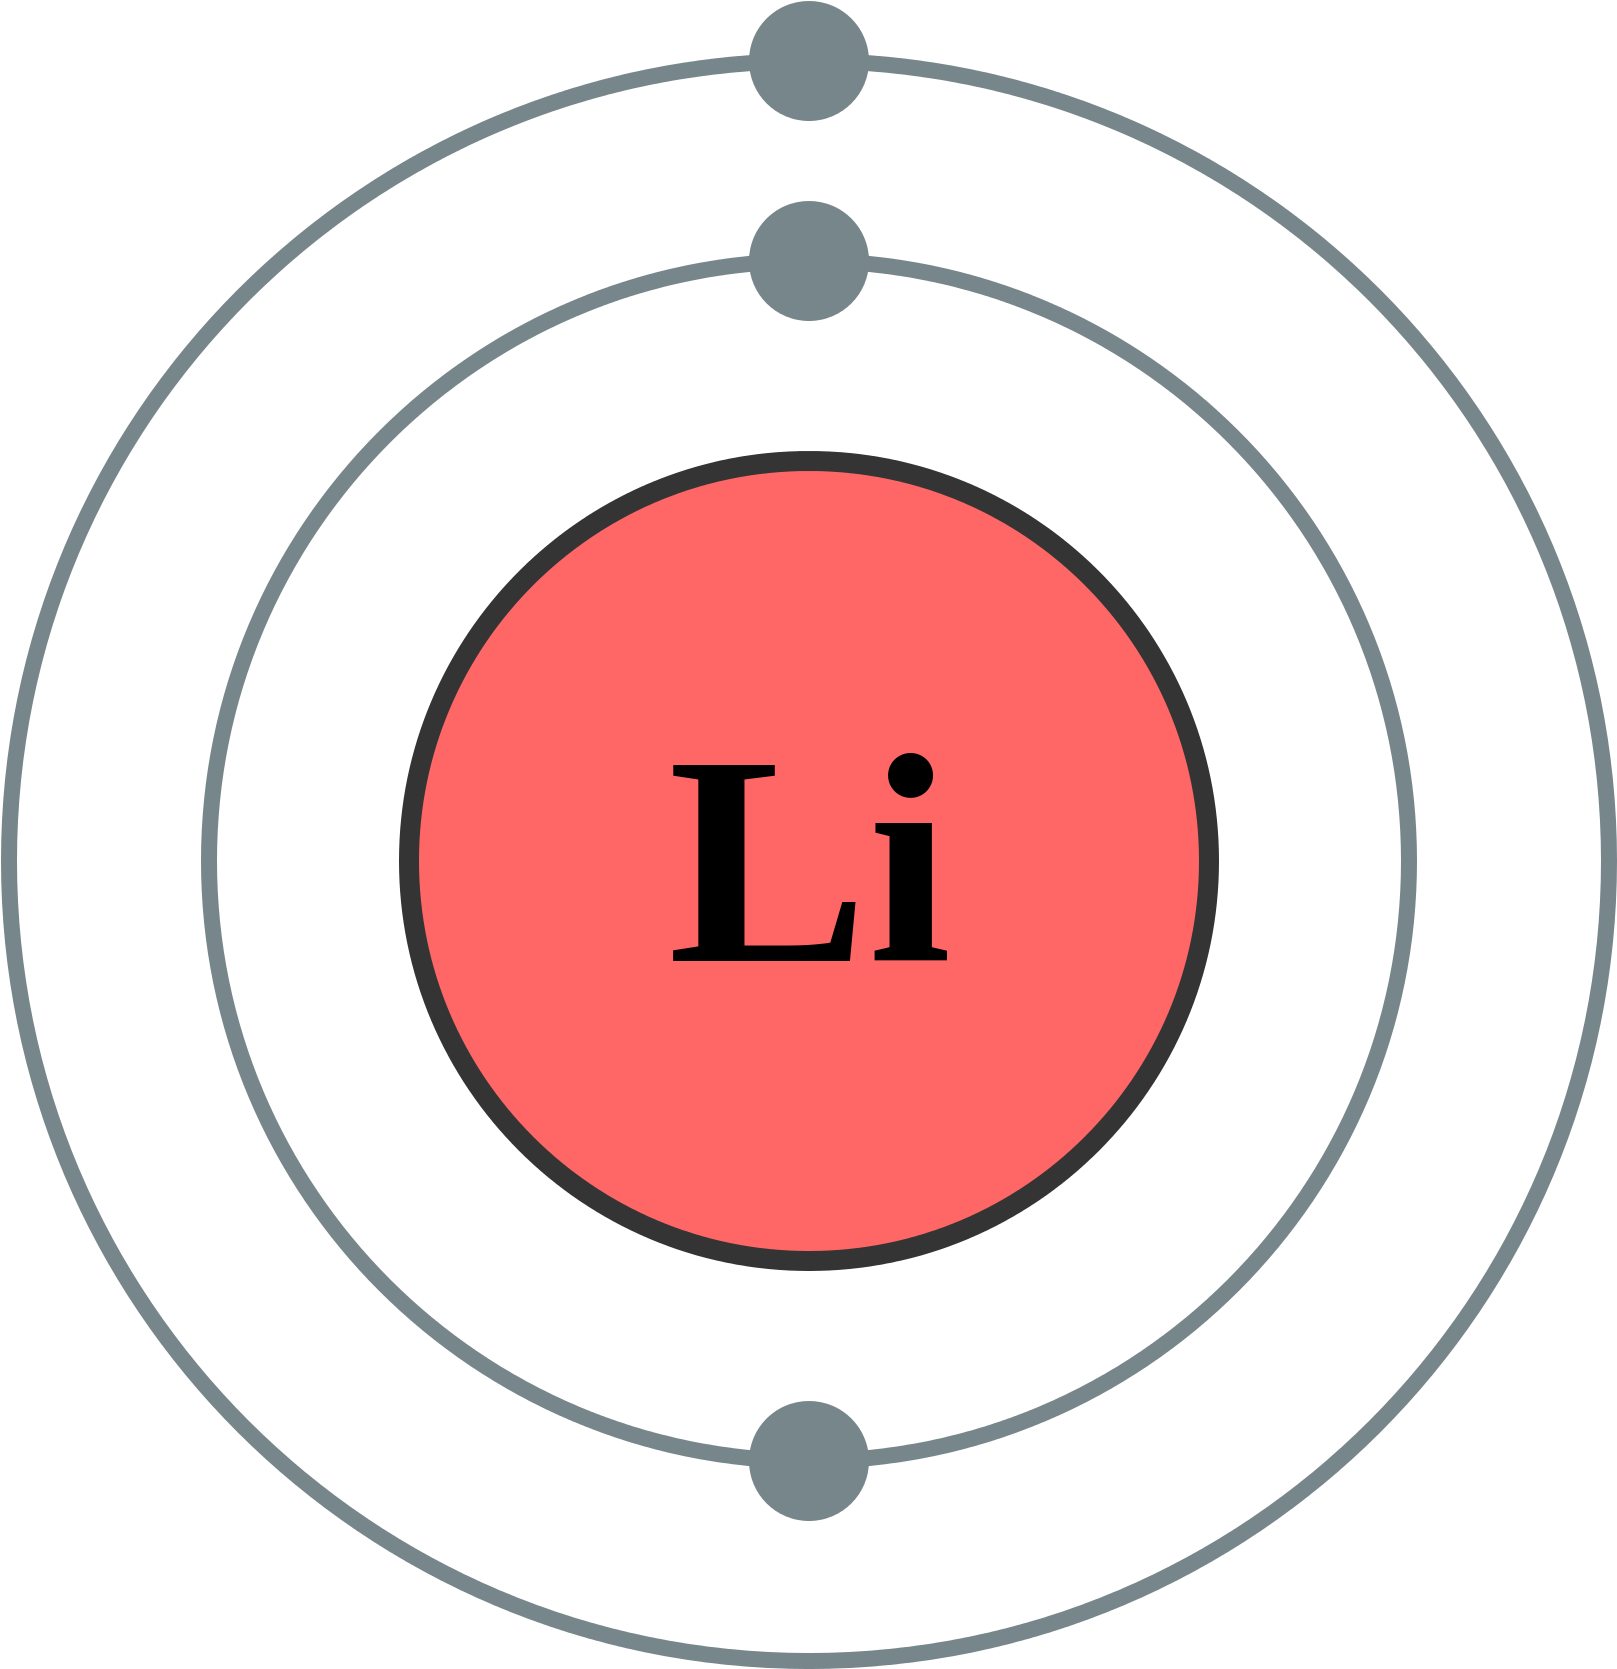 Lithium Element Illustration